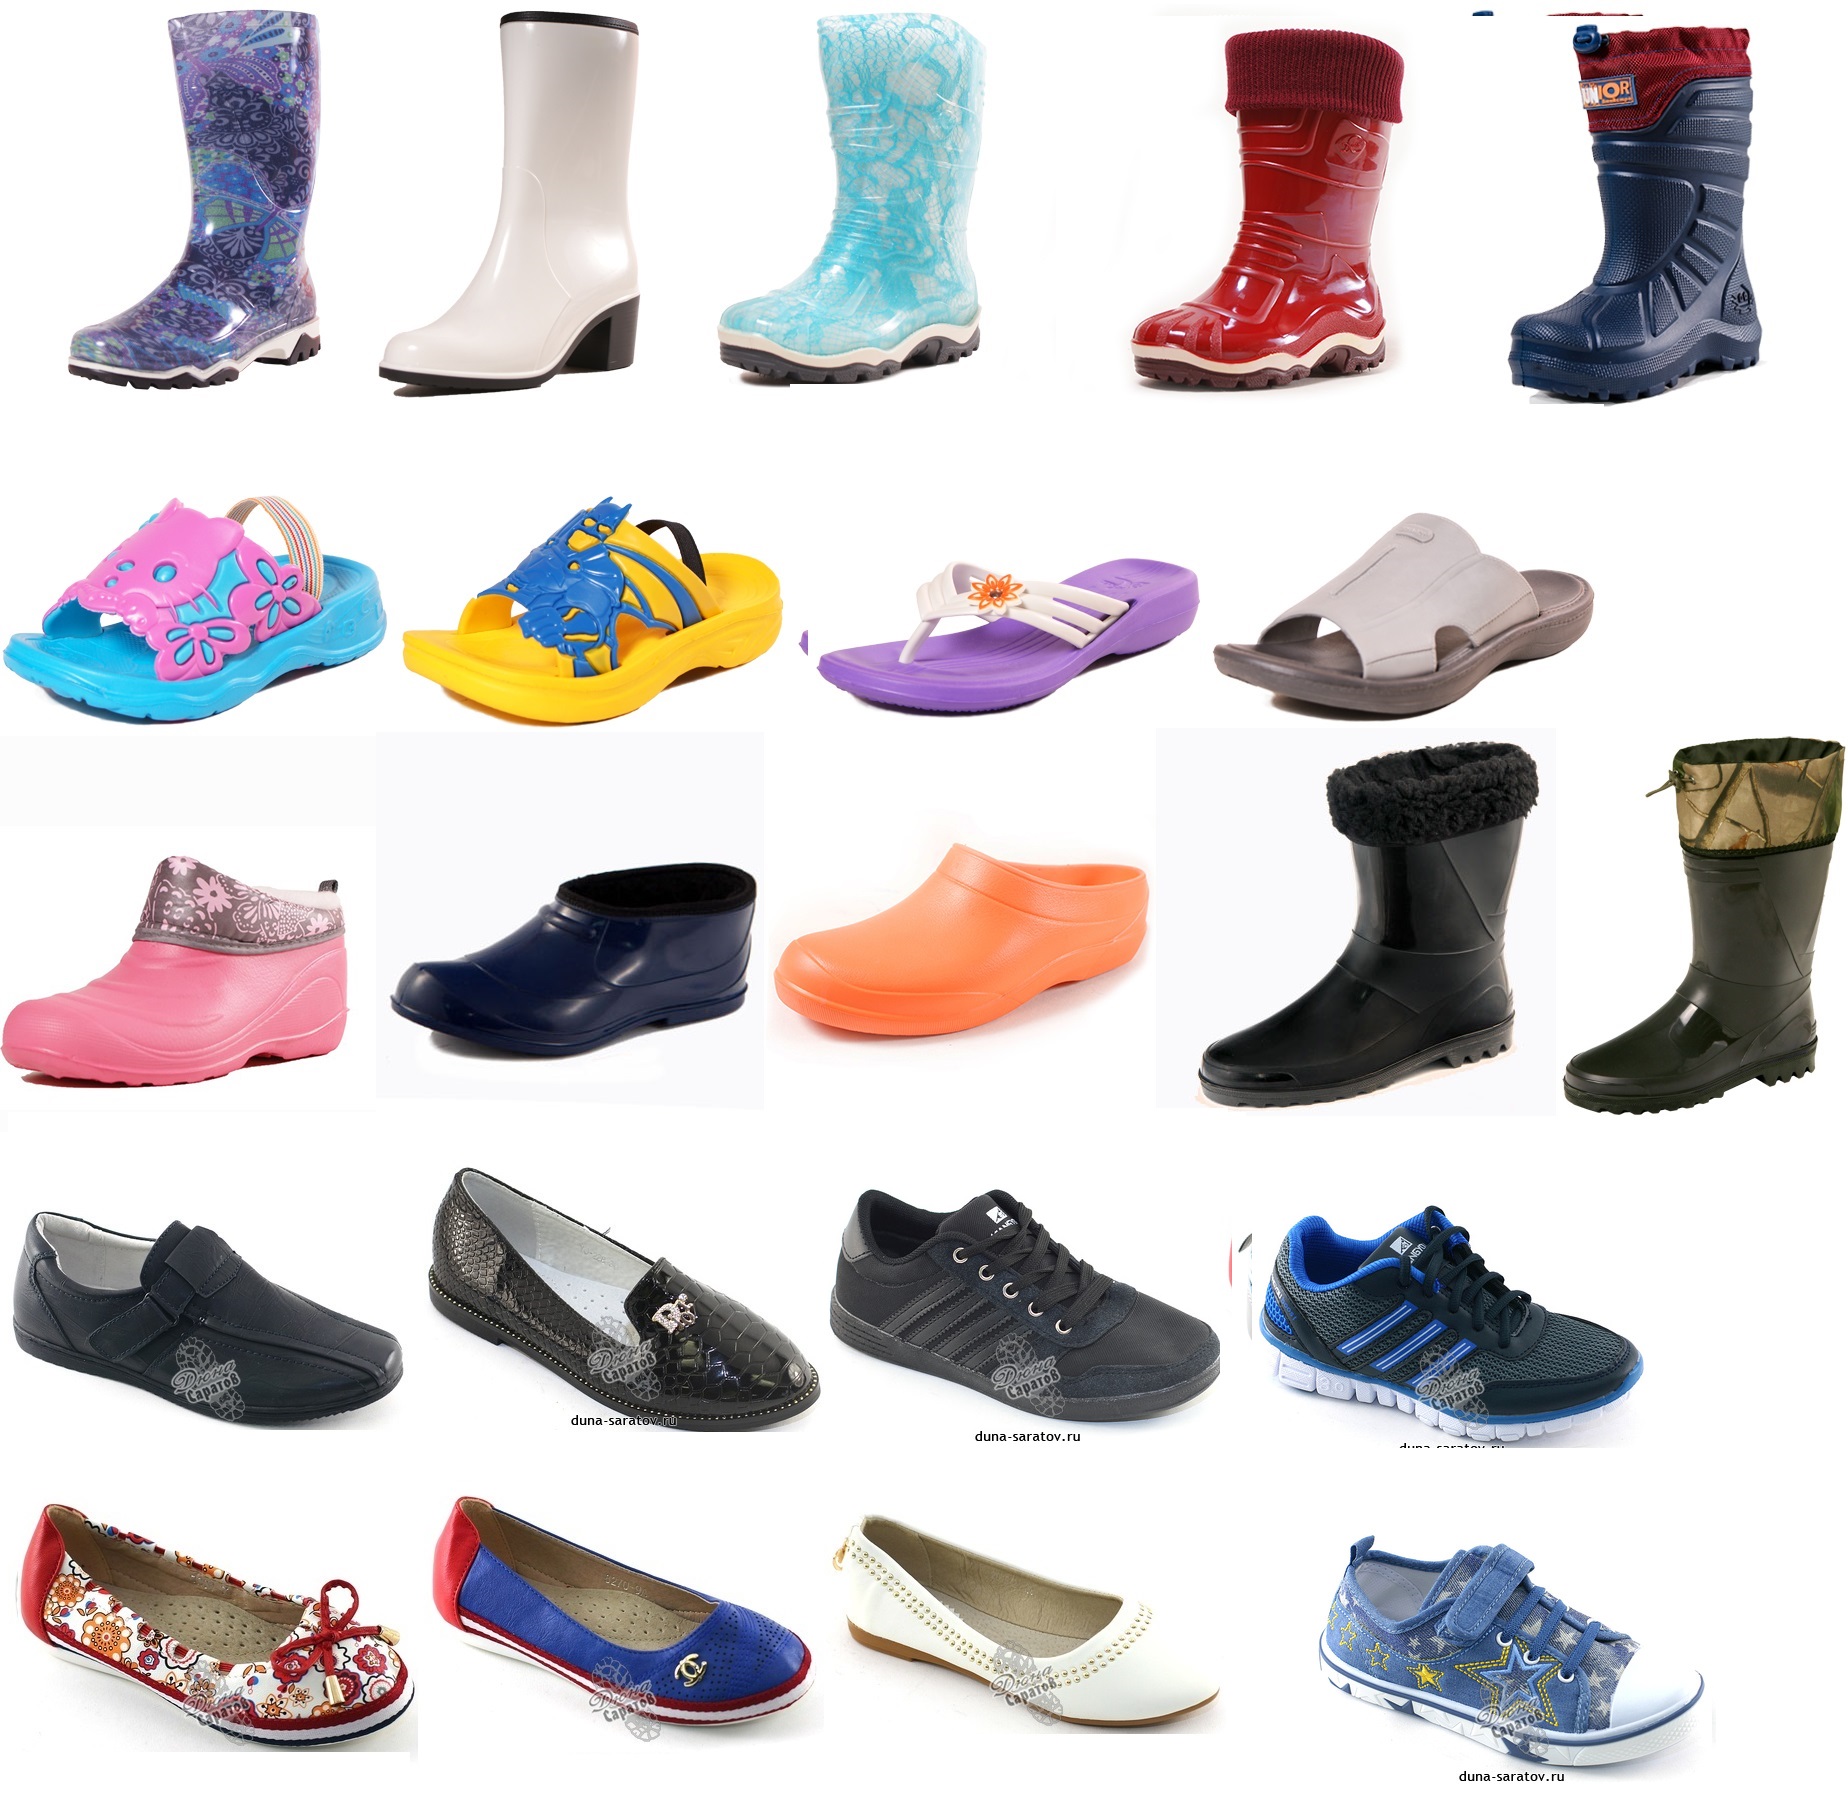 Женская обувь спб интернет магазин каталог. Ассортимент обуви. Одежда и обувь для детей. Ассортимент резиновой обуви. Обувь для всей семьи.